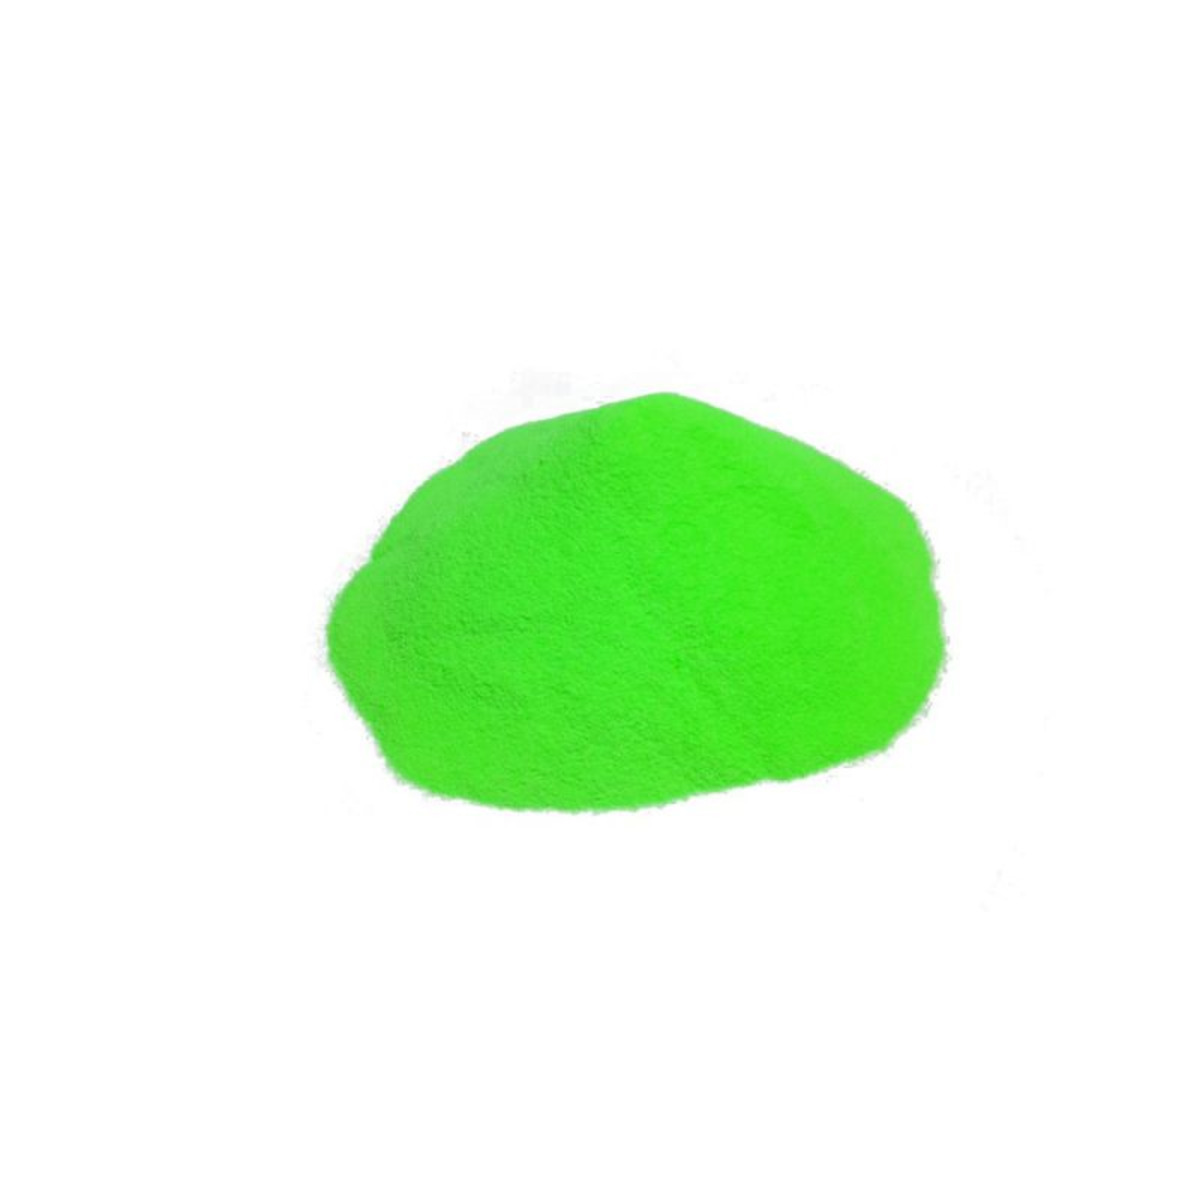 M2 Fishing Plastgum Powder Plasticizer For Ballast -  Green - 100 g        